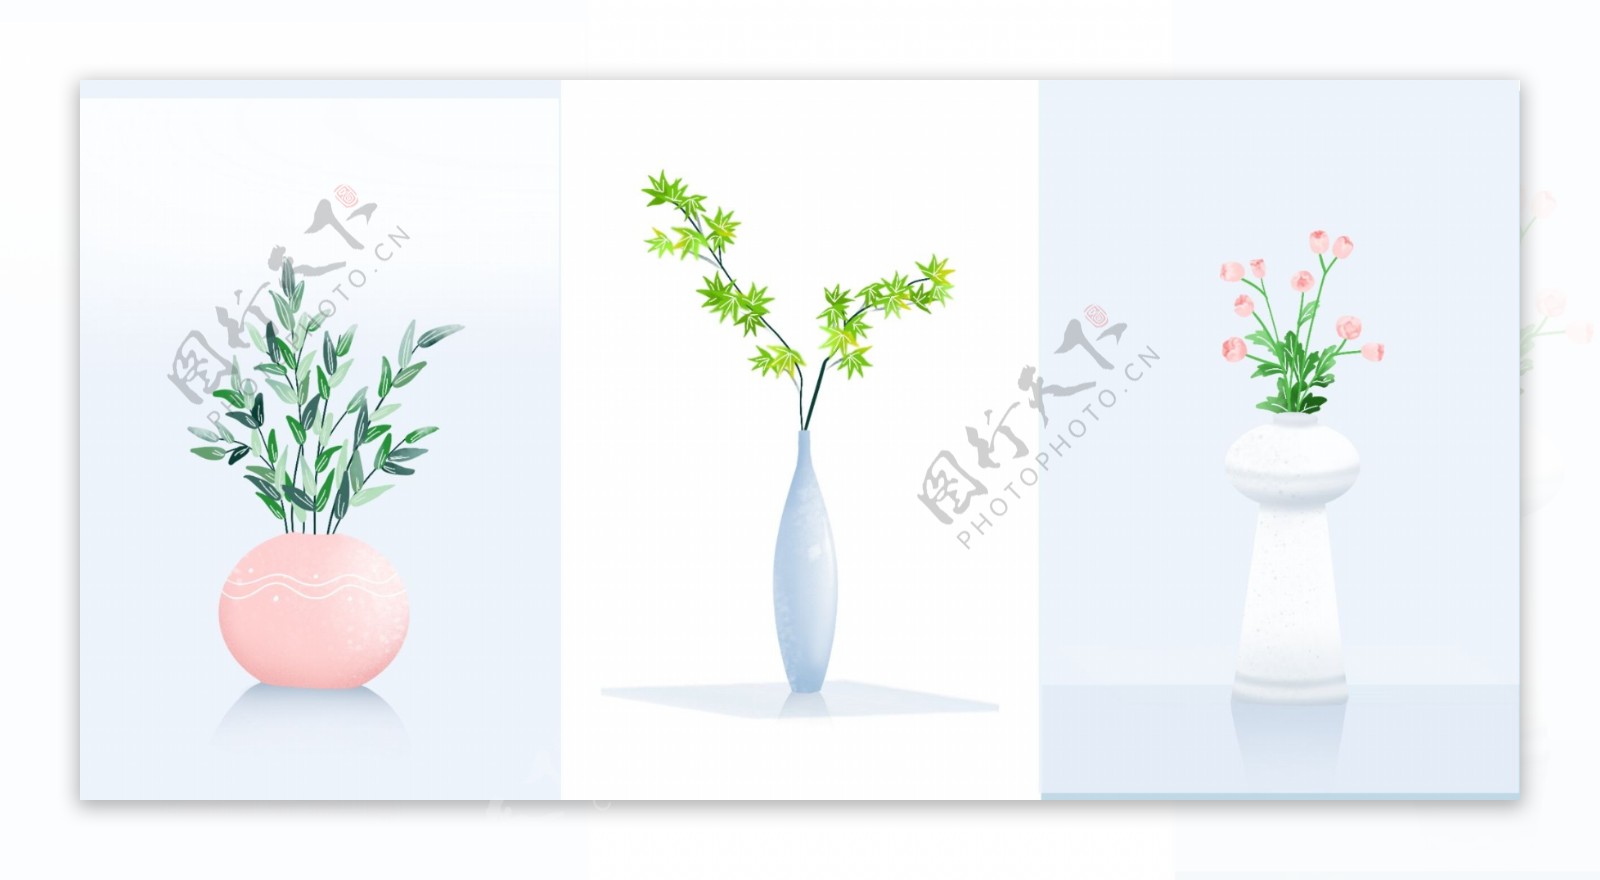 植物花卉盆栽花瓶简约现代装饰画